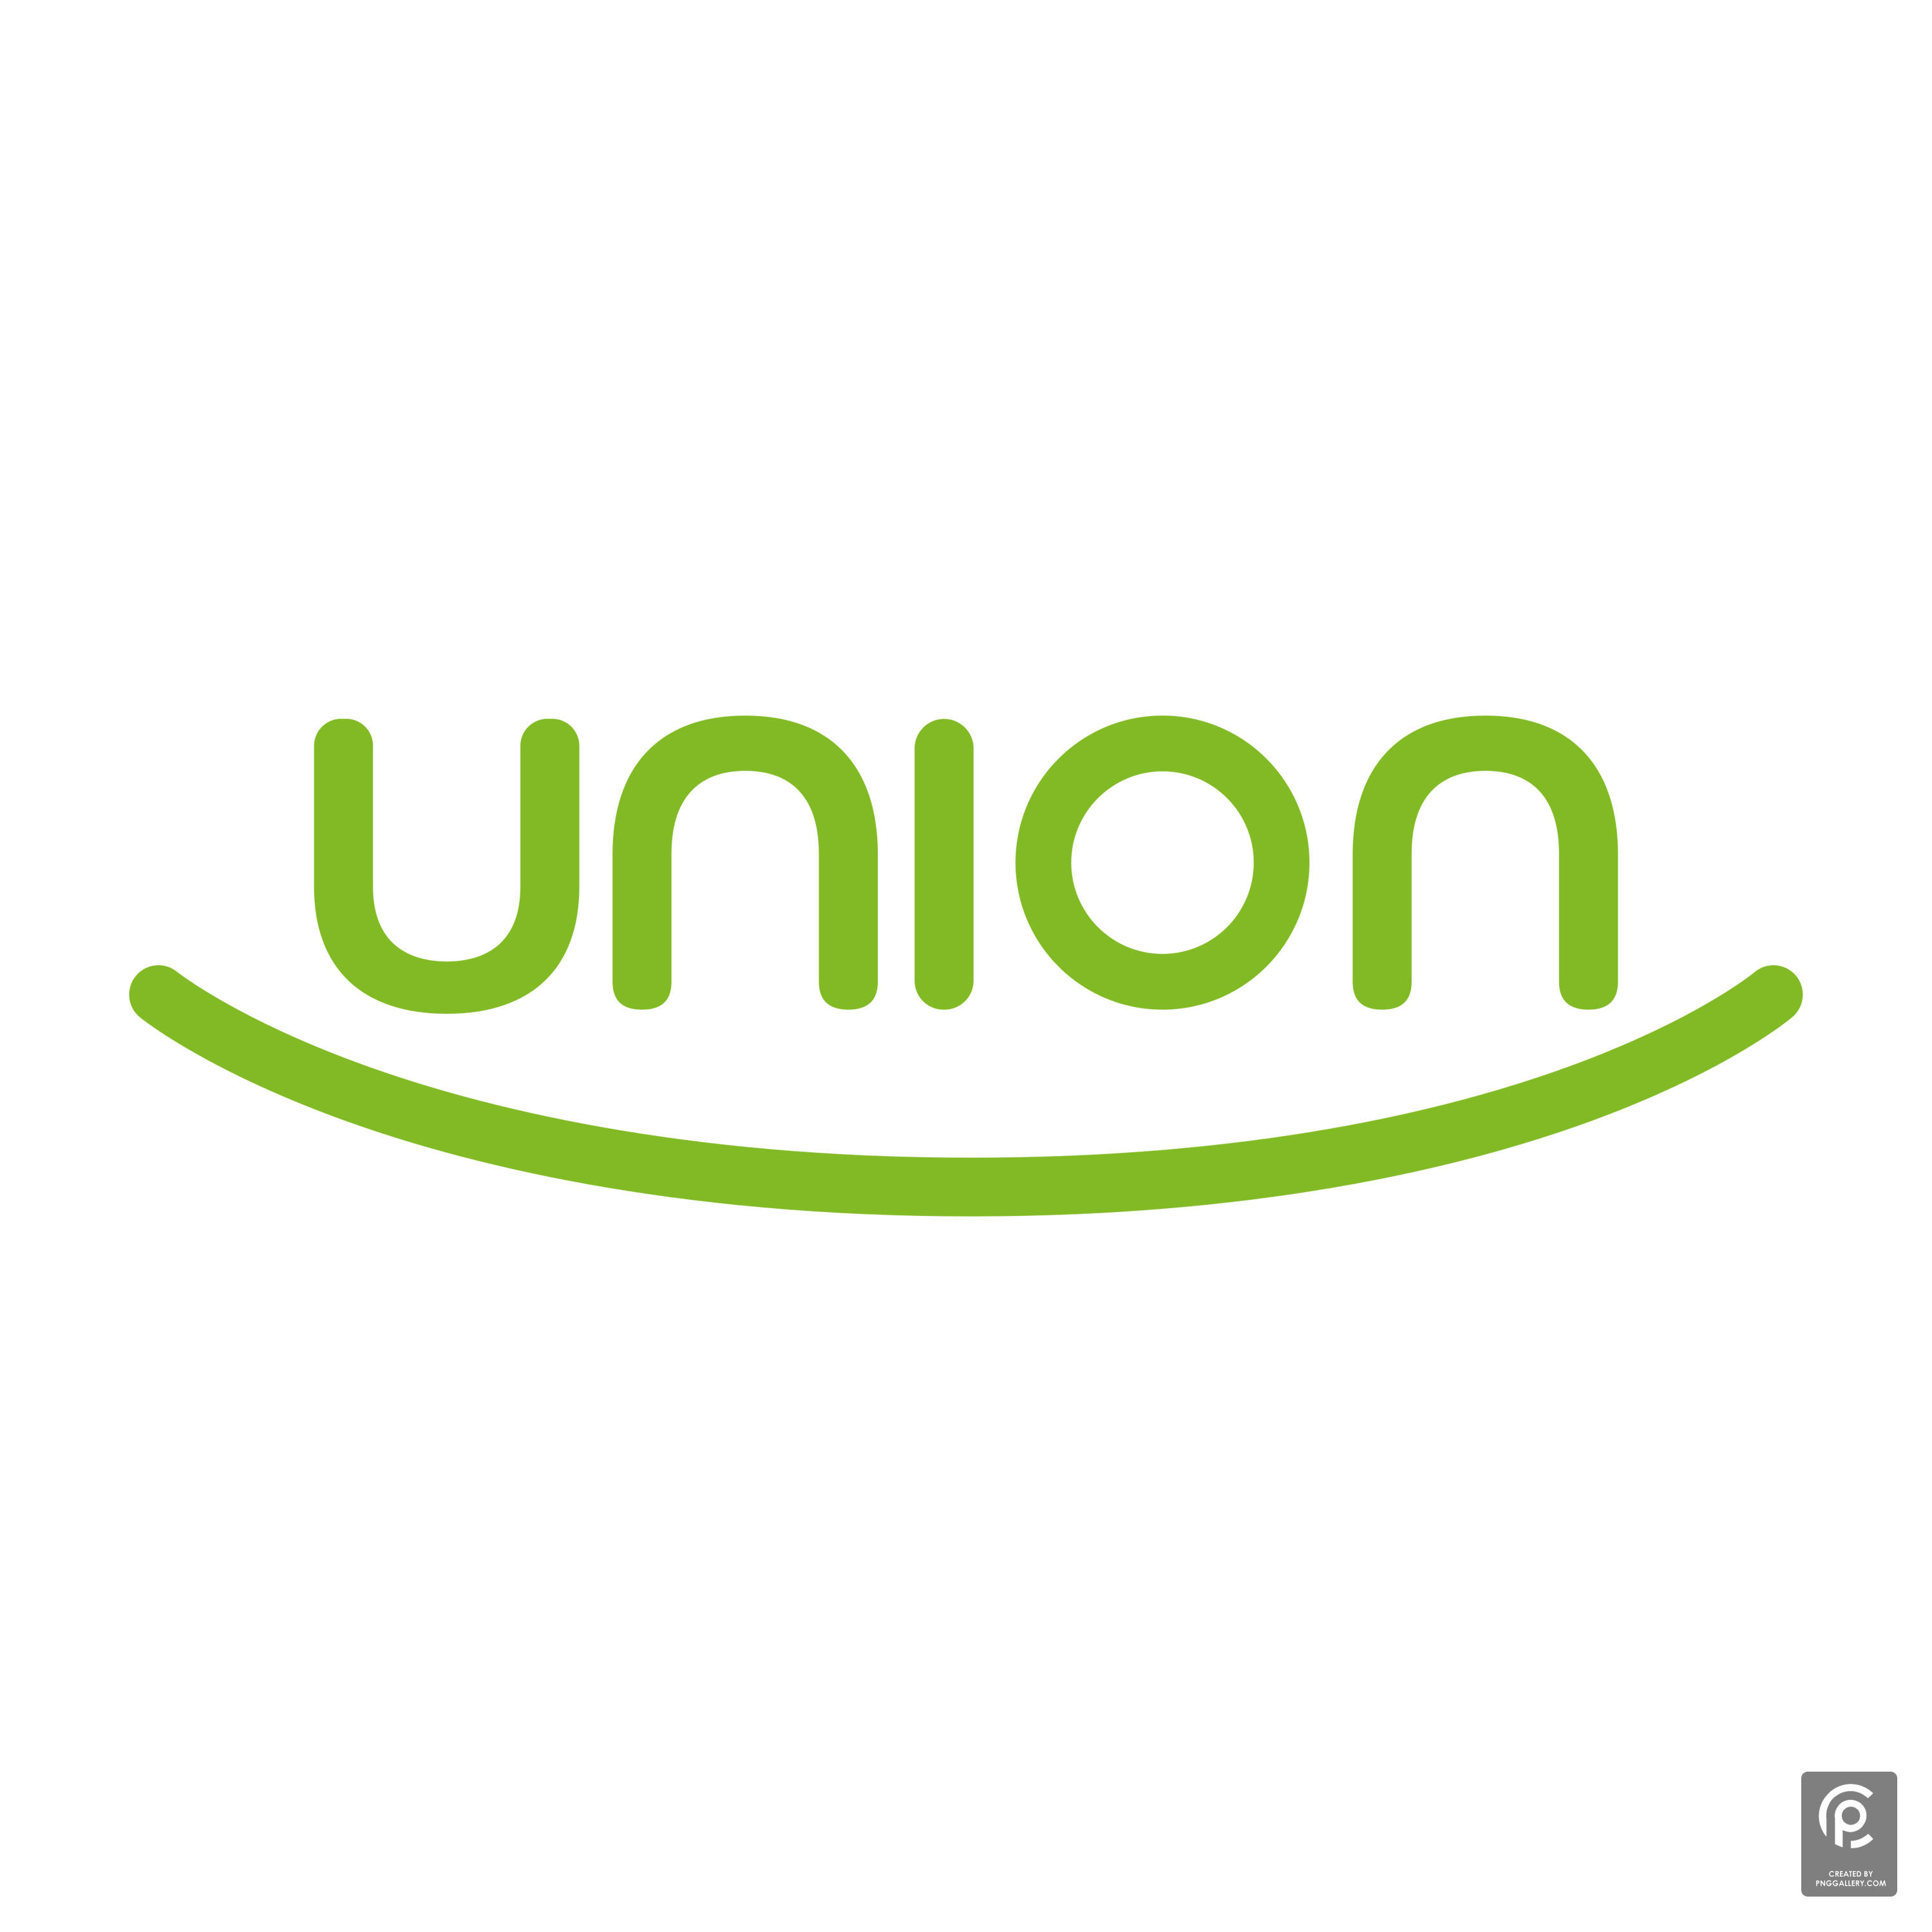 Union Logo Transparent Clipart